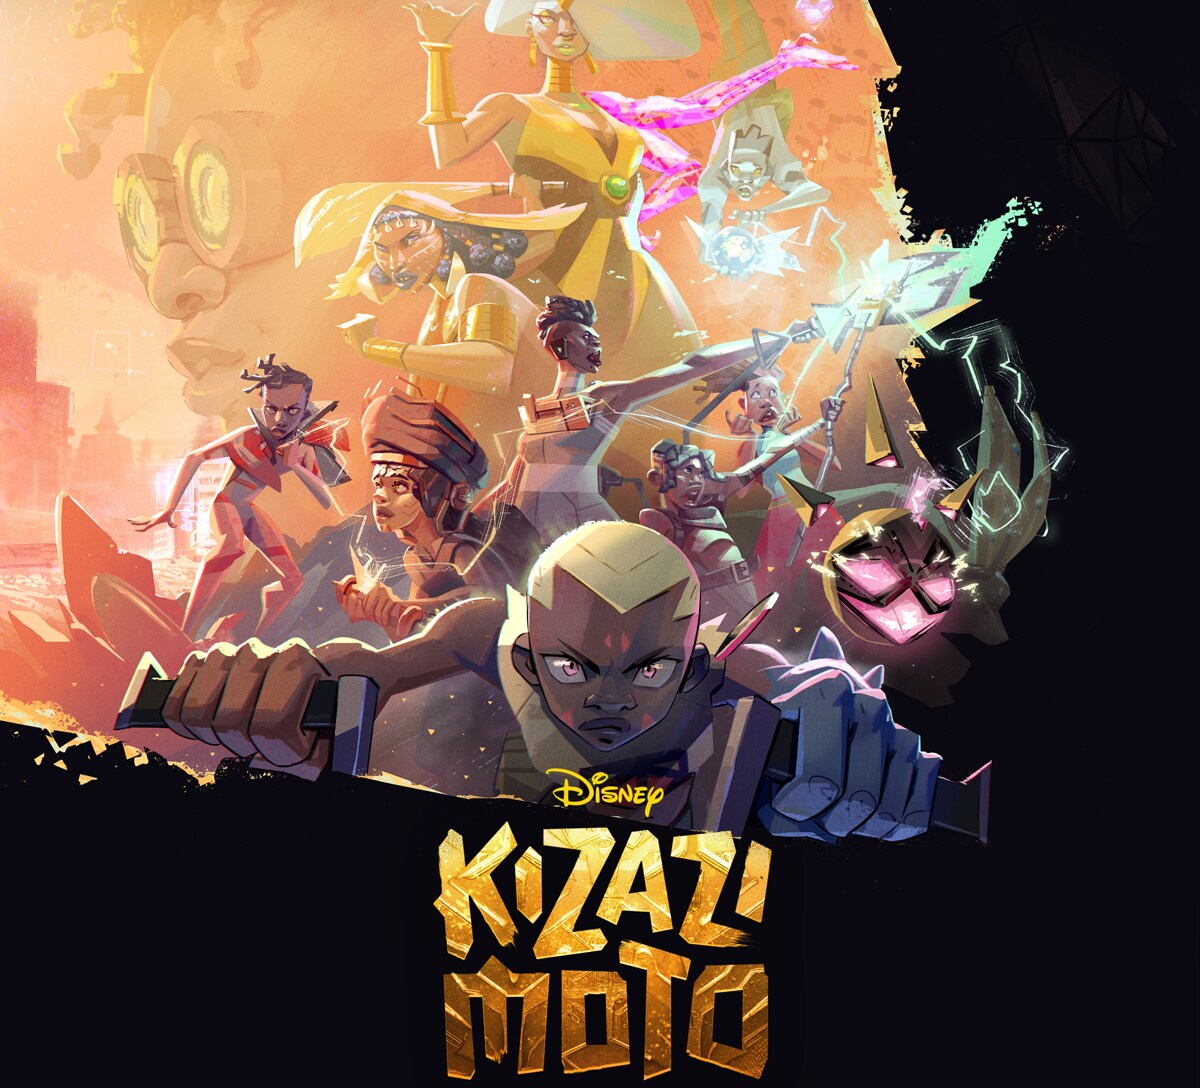 Kizazi Moto